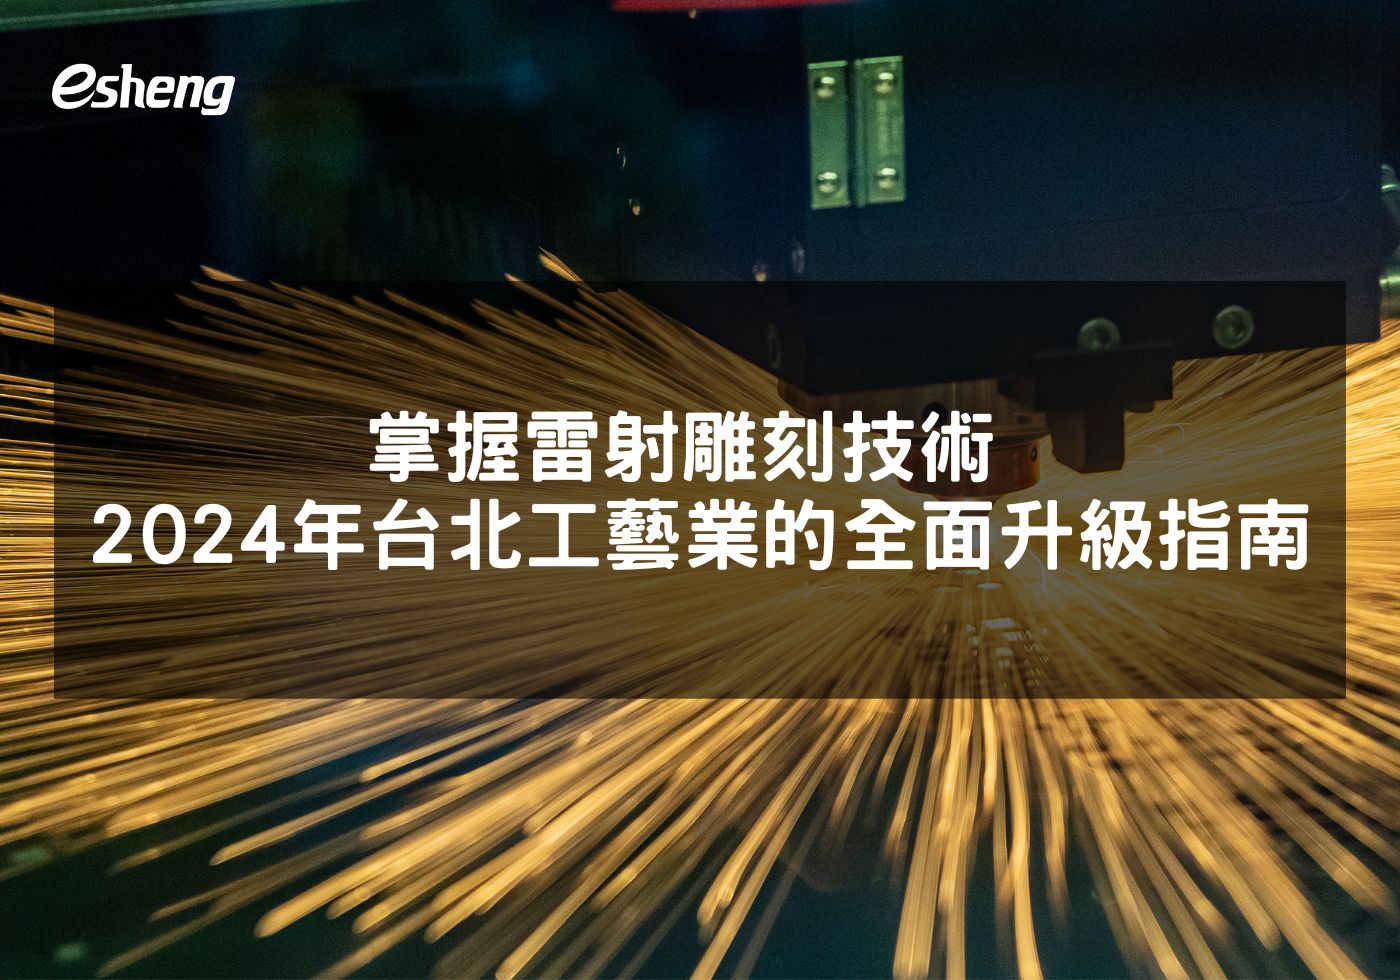 掌握雷射雕刻技術 2024年台北工藝業的全面升級指南